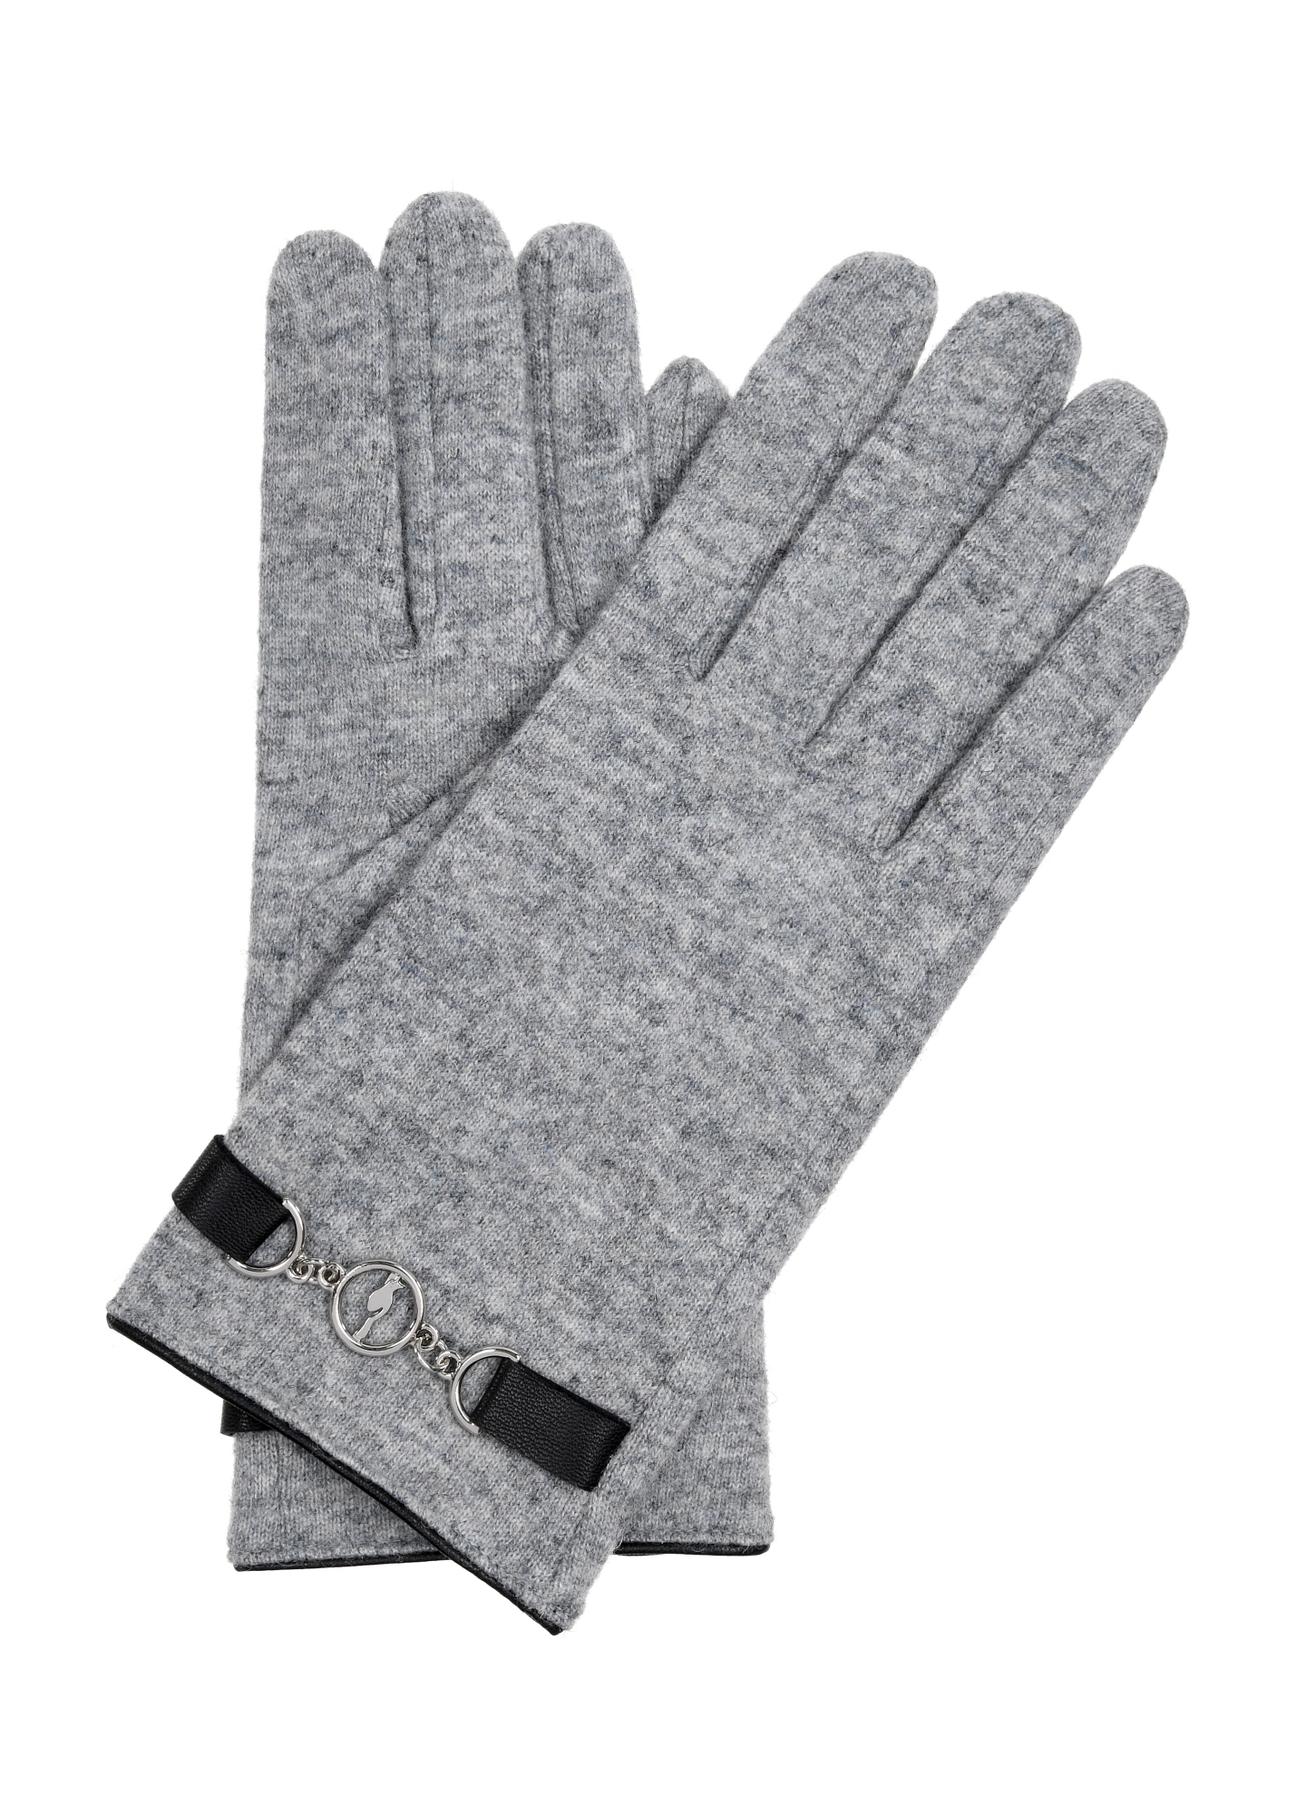 Szare rękawiczki damskie wełniane REKDT-0029-91(Z23)